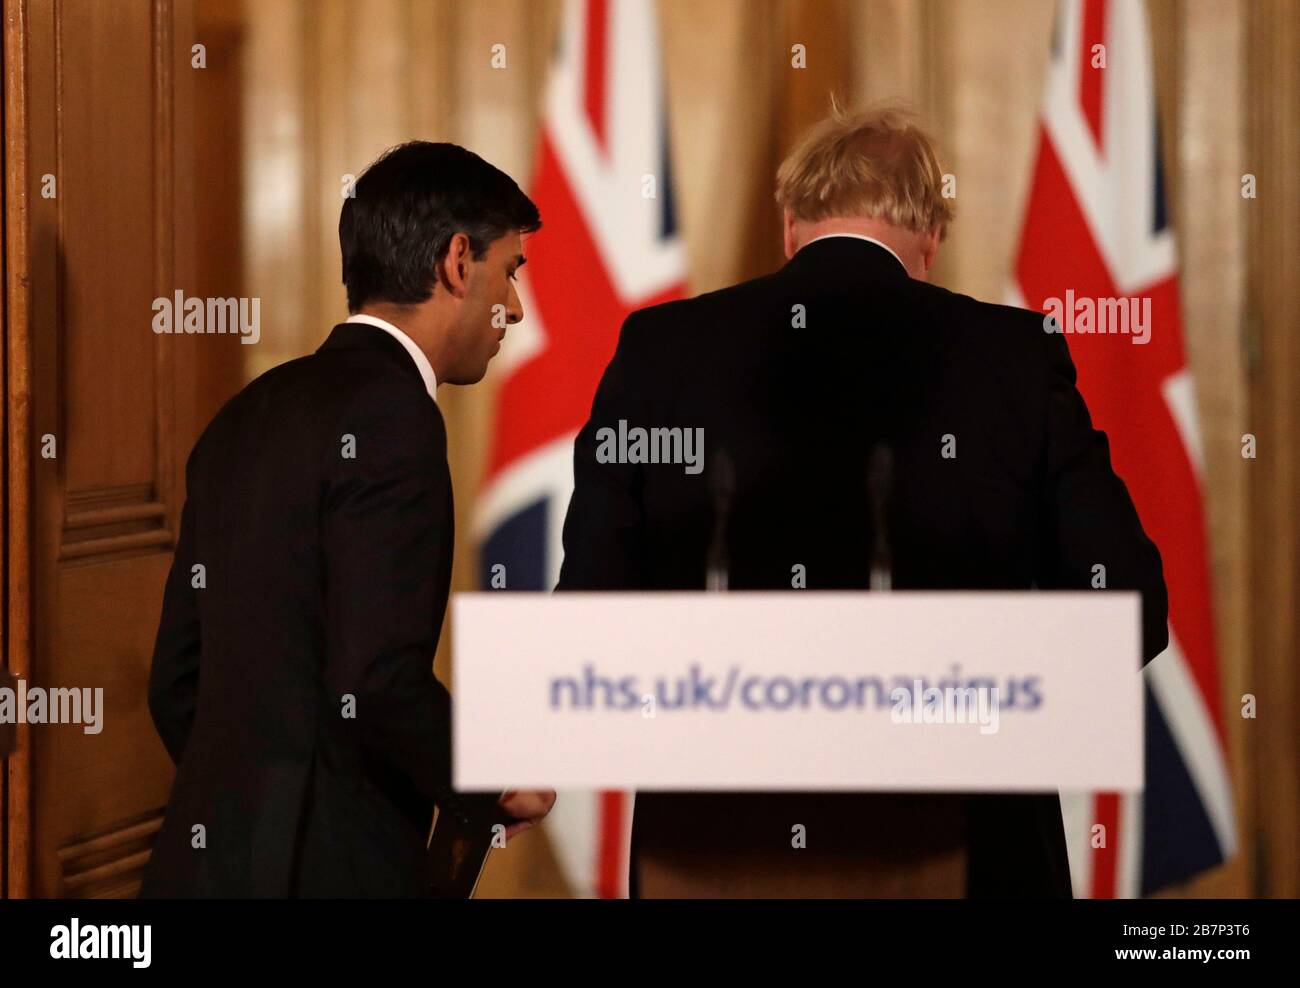 Le chancelier Rishi Sunak avec le Premier ministre Boris Johnson part après un exposé médiatique à Downing Street, Londres, sur Coronavirus (COVID-19). Date de l'image: Mardi 17 mars 2020. Voir l'histoire de PA SANTÉ Coronavirus. Crédit photo devrait lire: Matt Dunham/PA fil Banque D'Images